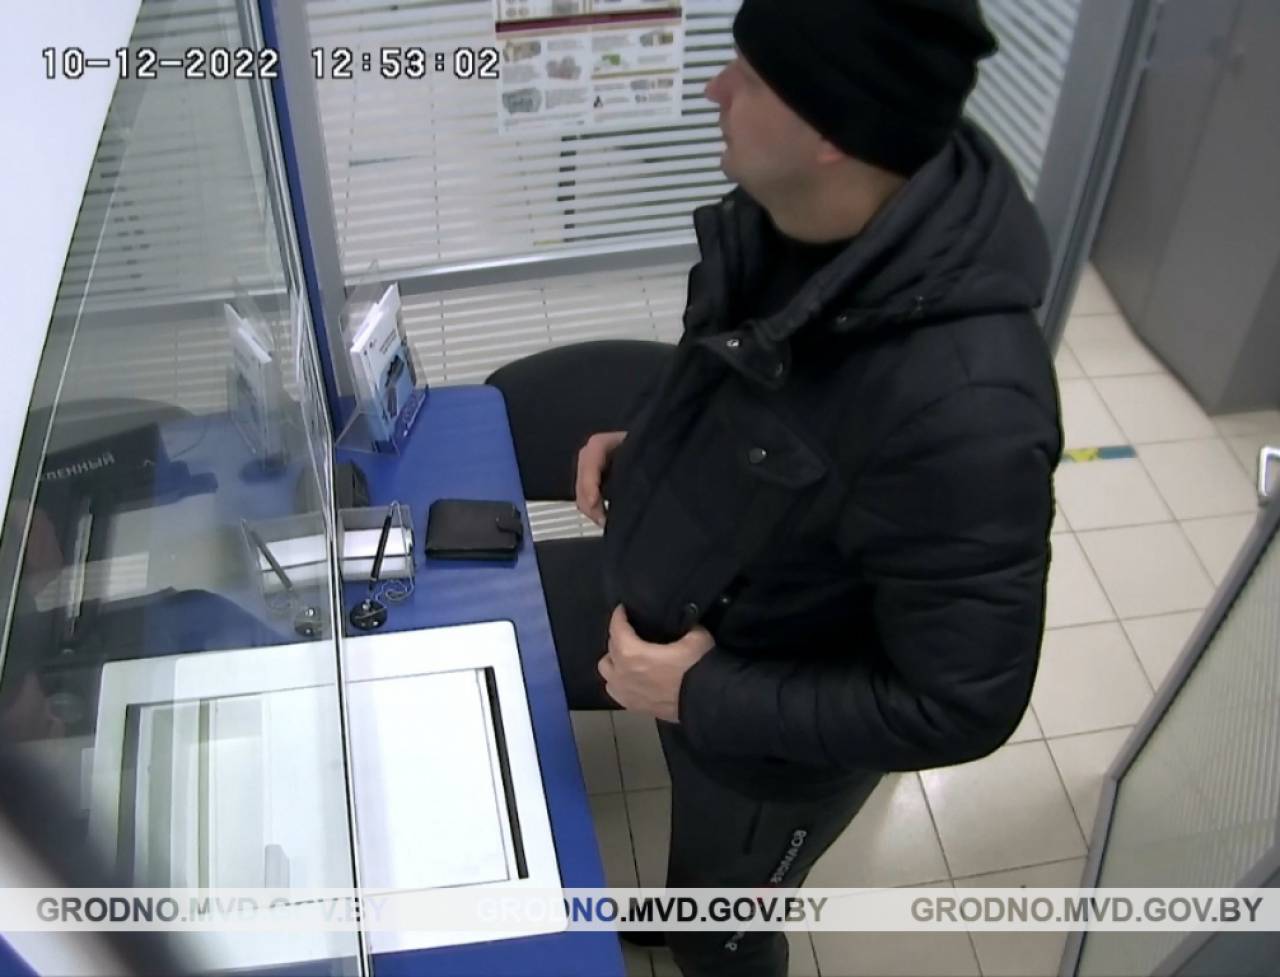 В Гродно милиция разыскивает мужчину, который вышел из обменника на 900 рублей богаче, чем должен был